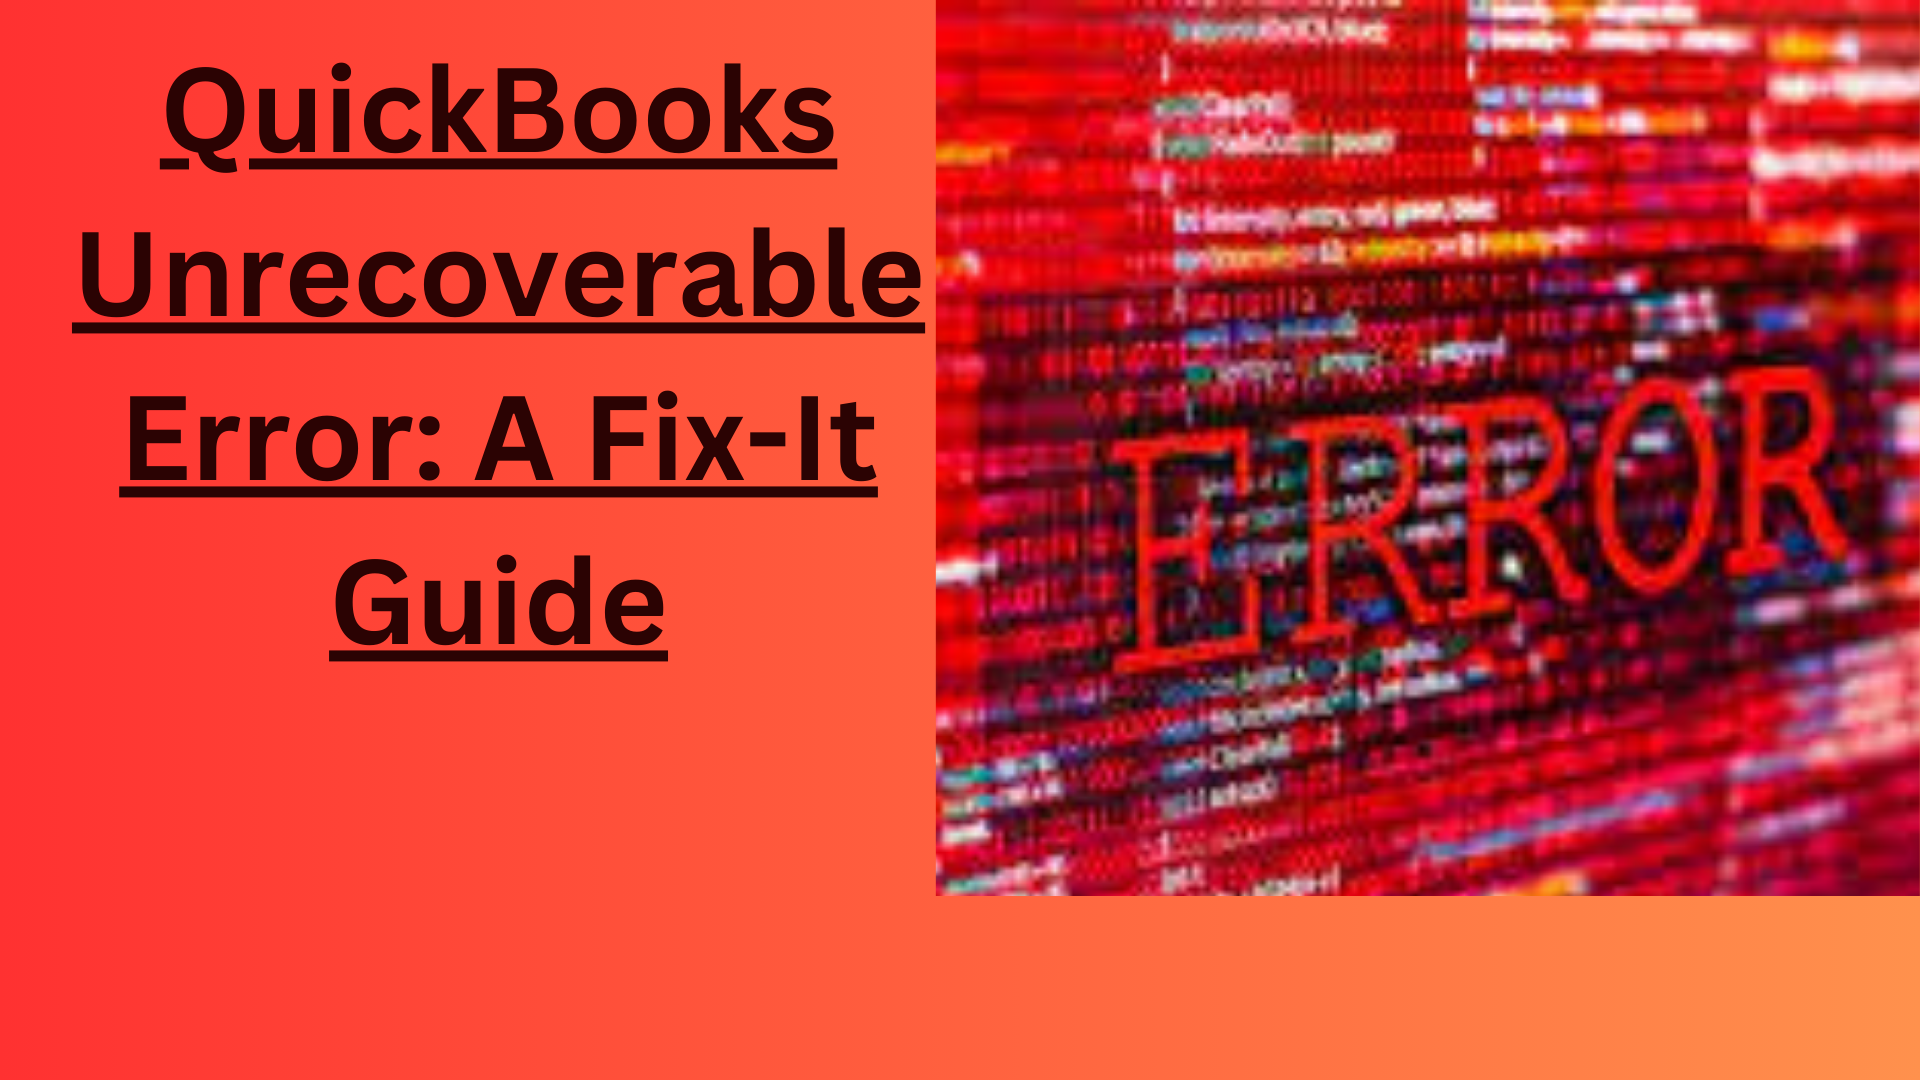 QuickBooks Unrecoverable Error: A Fix-It Guide - Qbinfoaccount